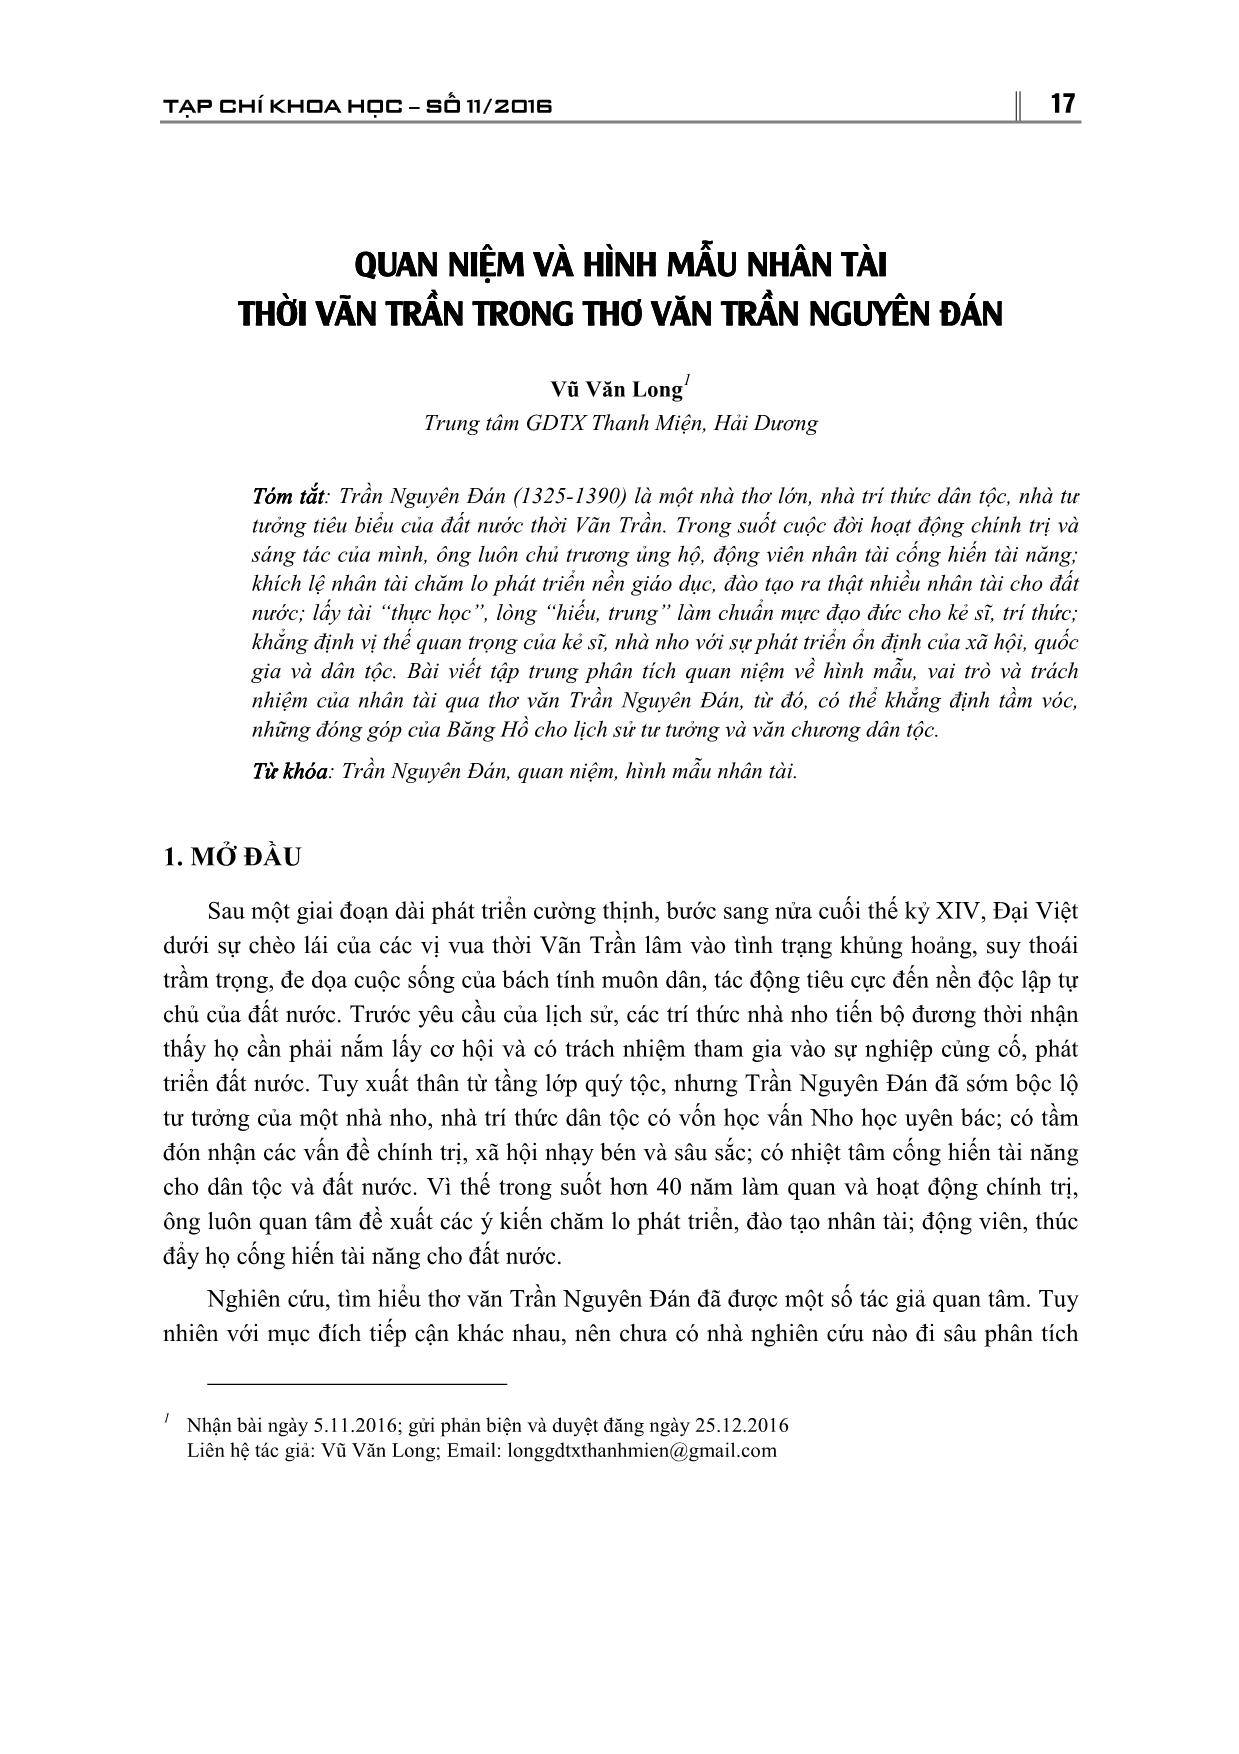 Quan niệm về hình mẫu nhân tài thời Vãn Trần Phong thơ văn Trần Nguyên Đán trang 1